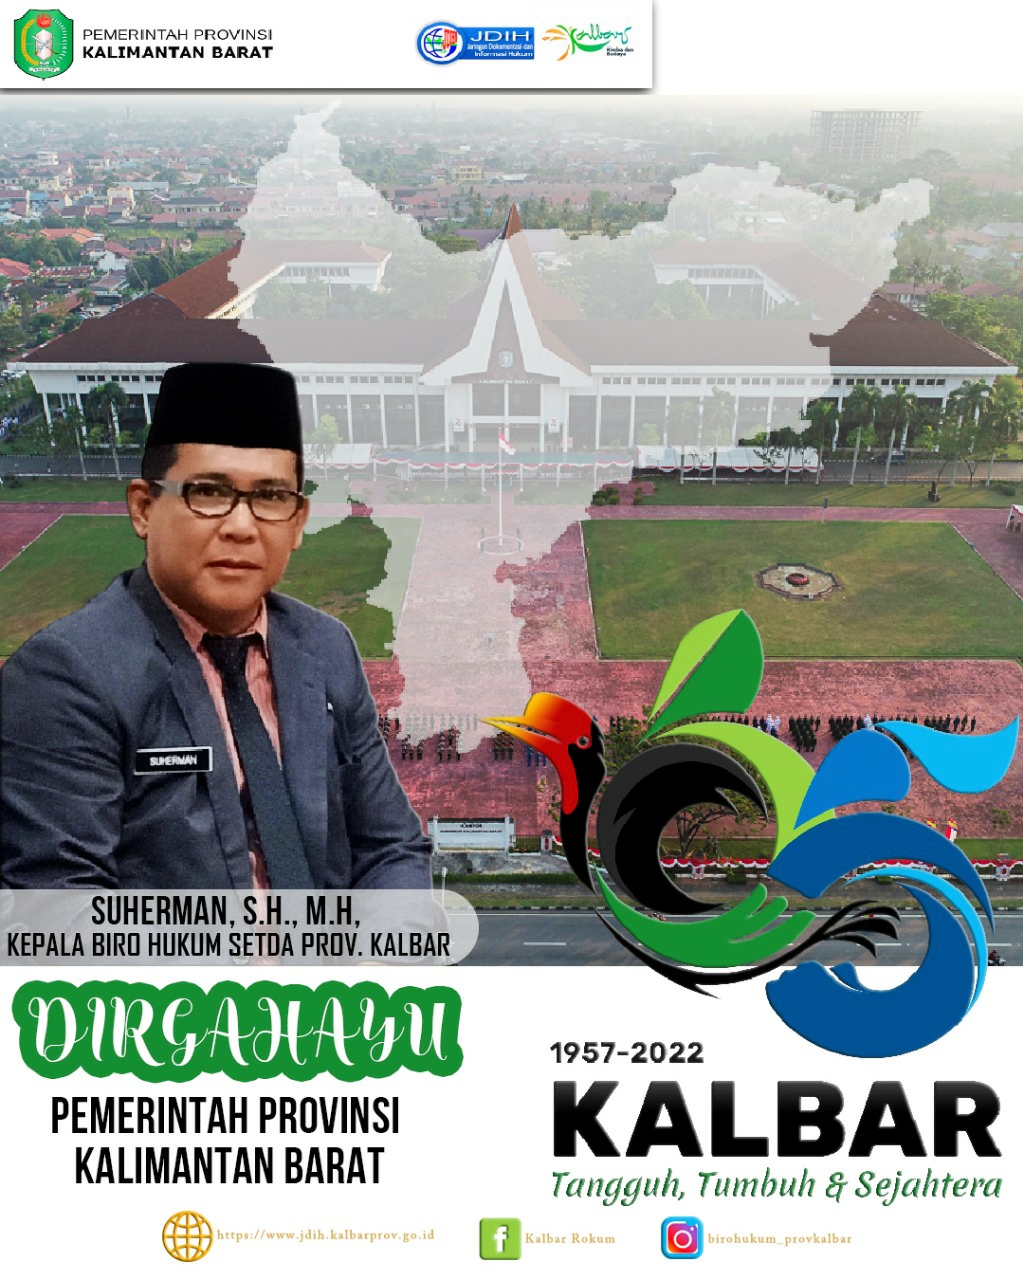 Selamat Hari Jadi Pemerintah Provinsi Kalimantan Barat ke 65, KALBAR Tangguh, Tumbuh dan Sejahtera.